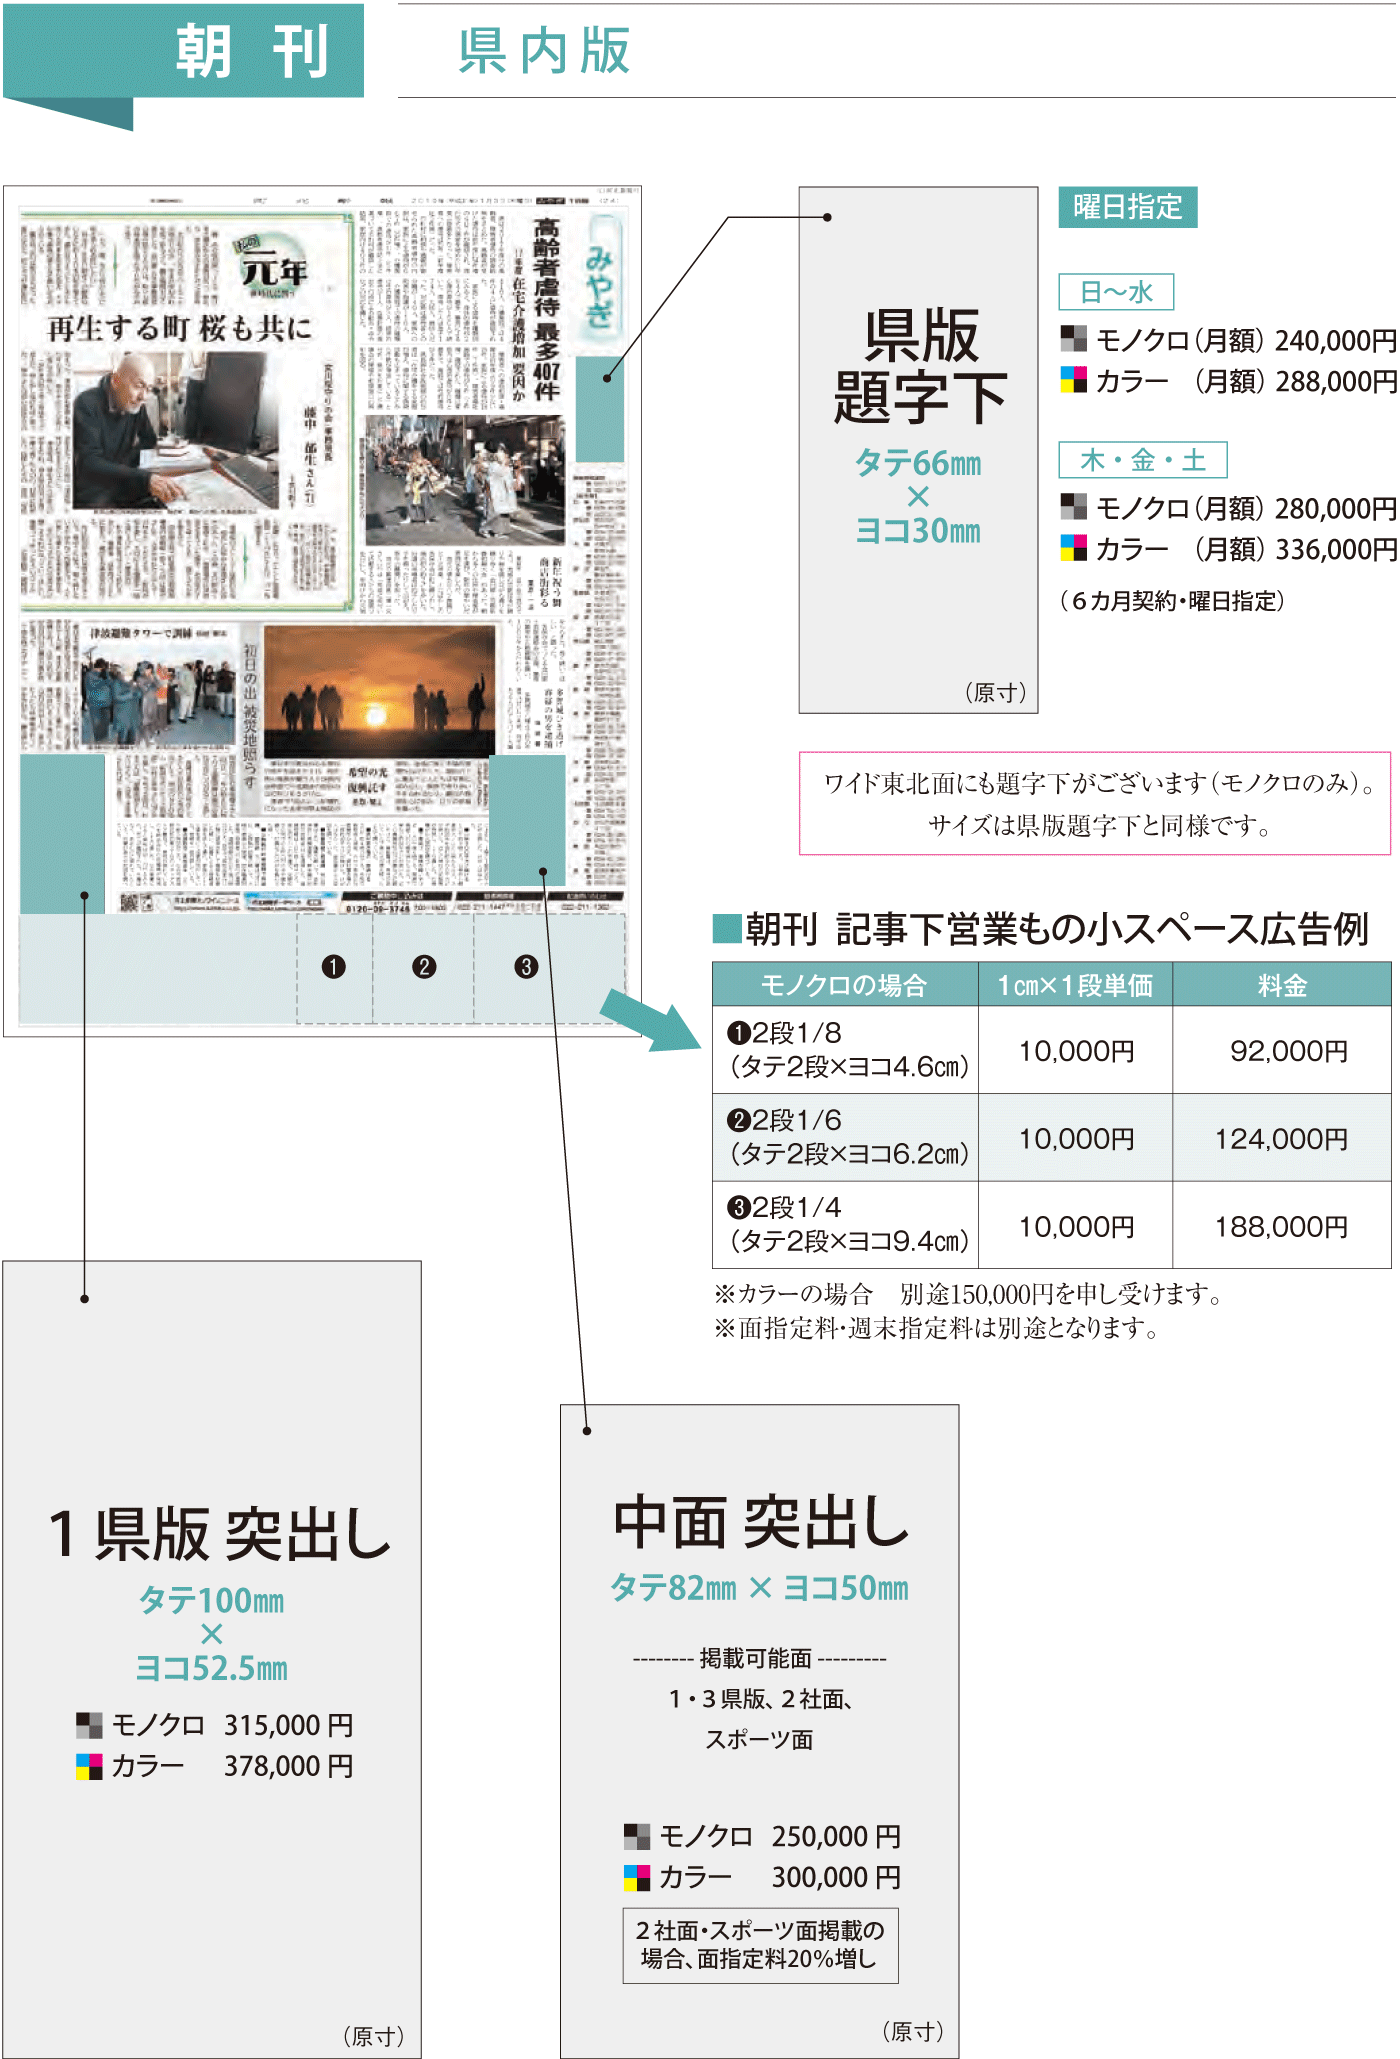 河北新報の朝刊県内版広告掲載イメージ